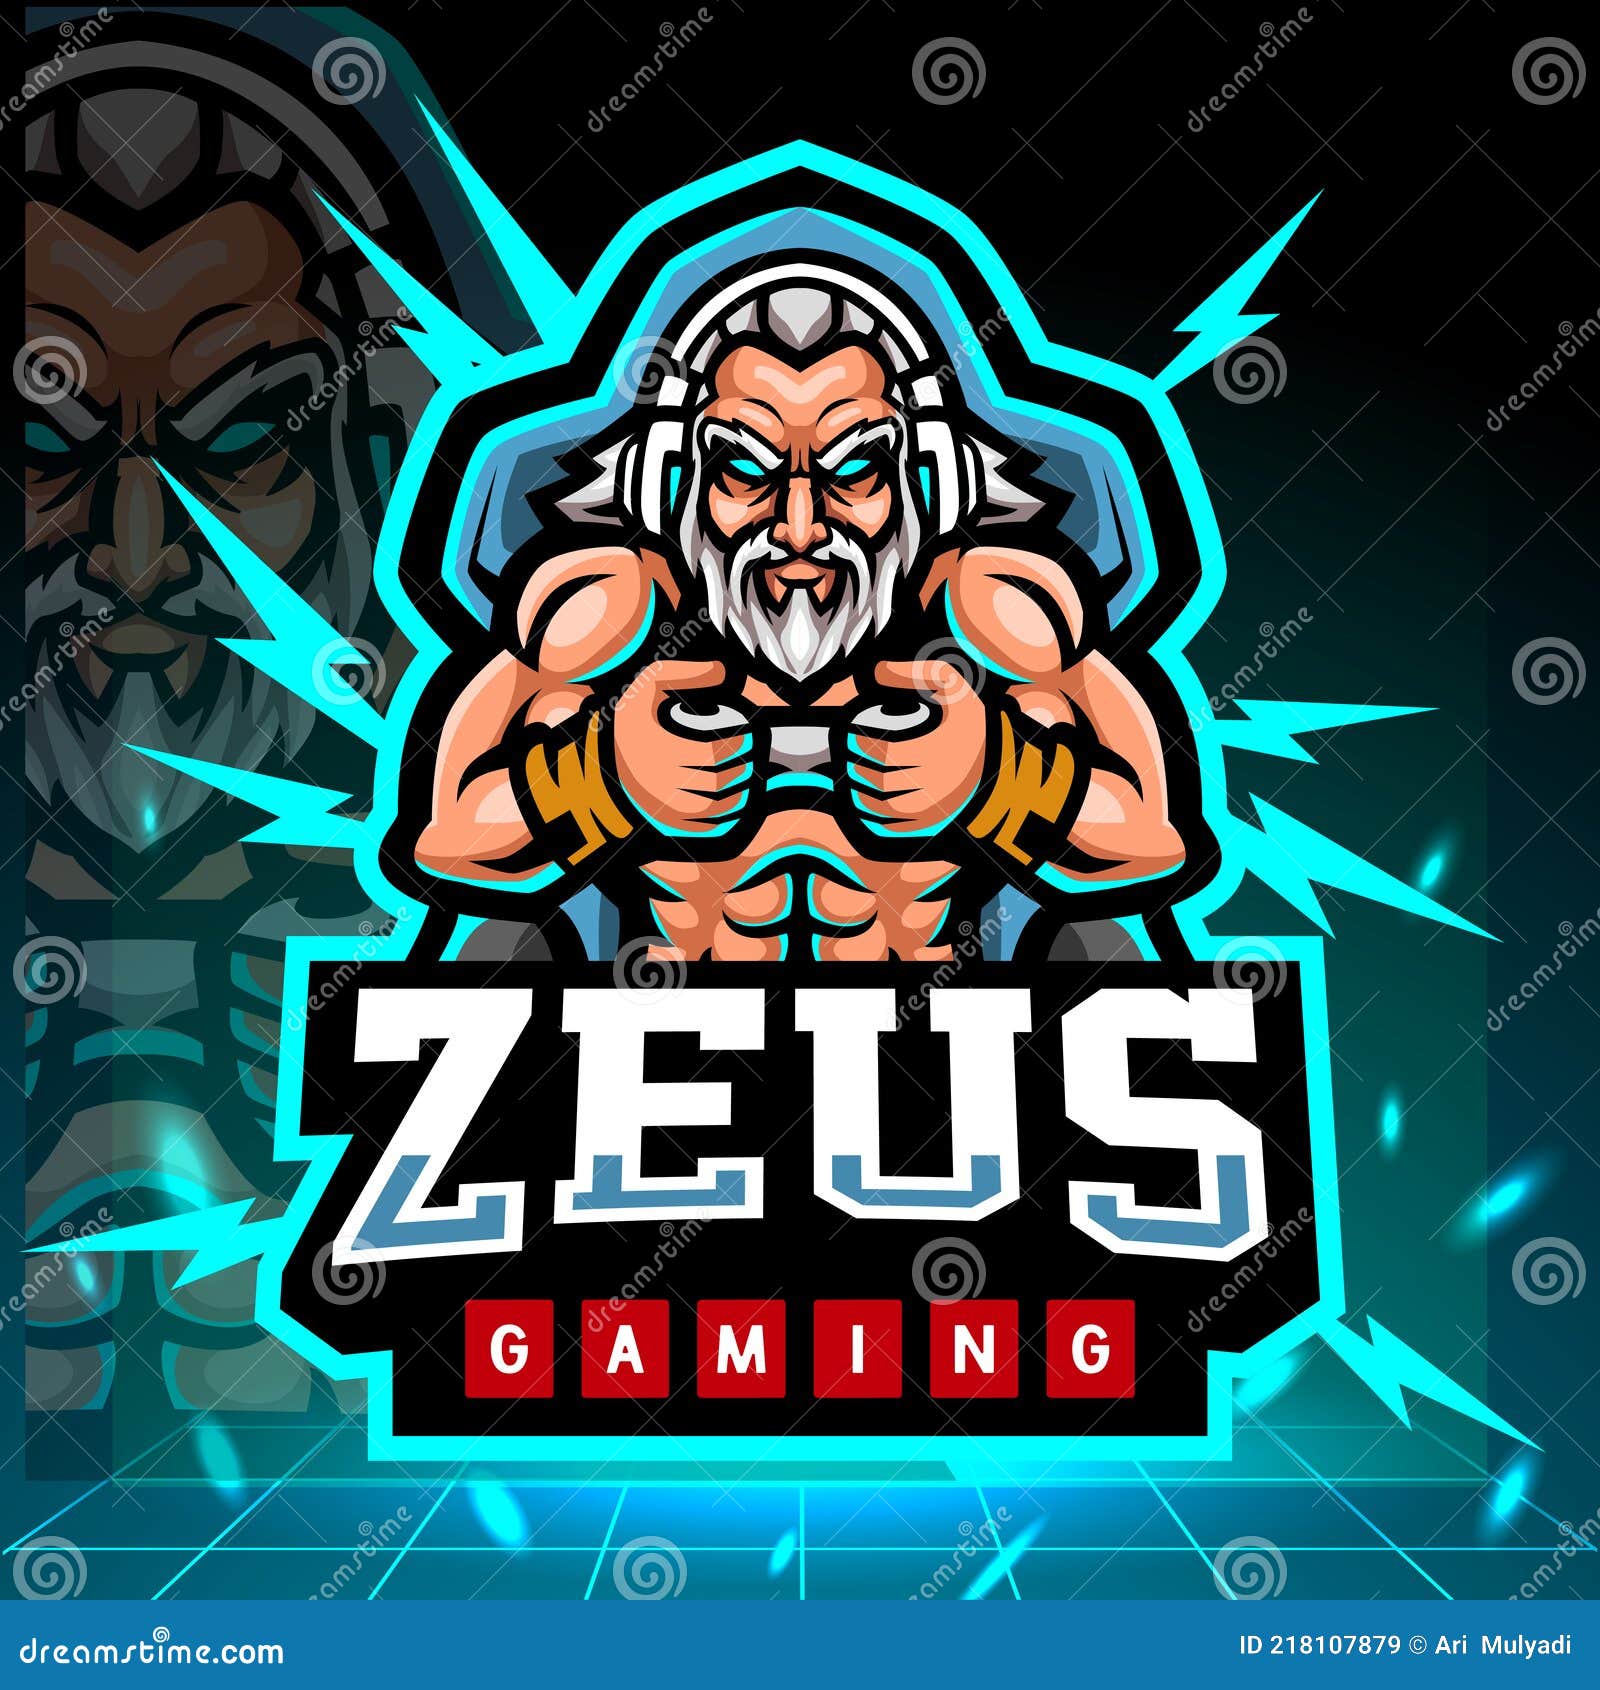 Играть зевс хадес taplink. Мэскот лого Зевс. Zeus аватарка. Zeus(2009) логотип. Талисман Зевса.